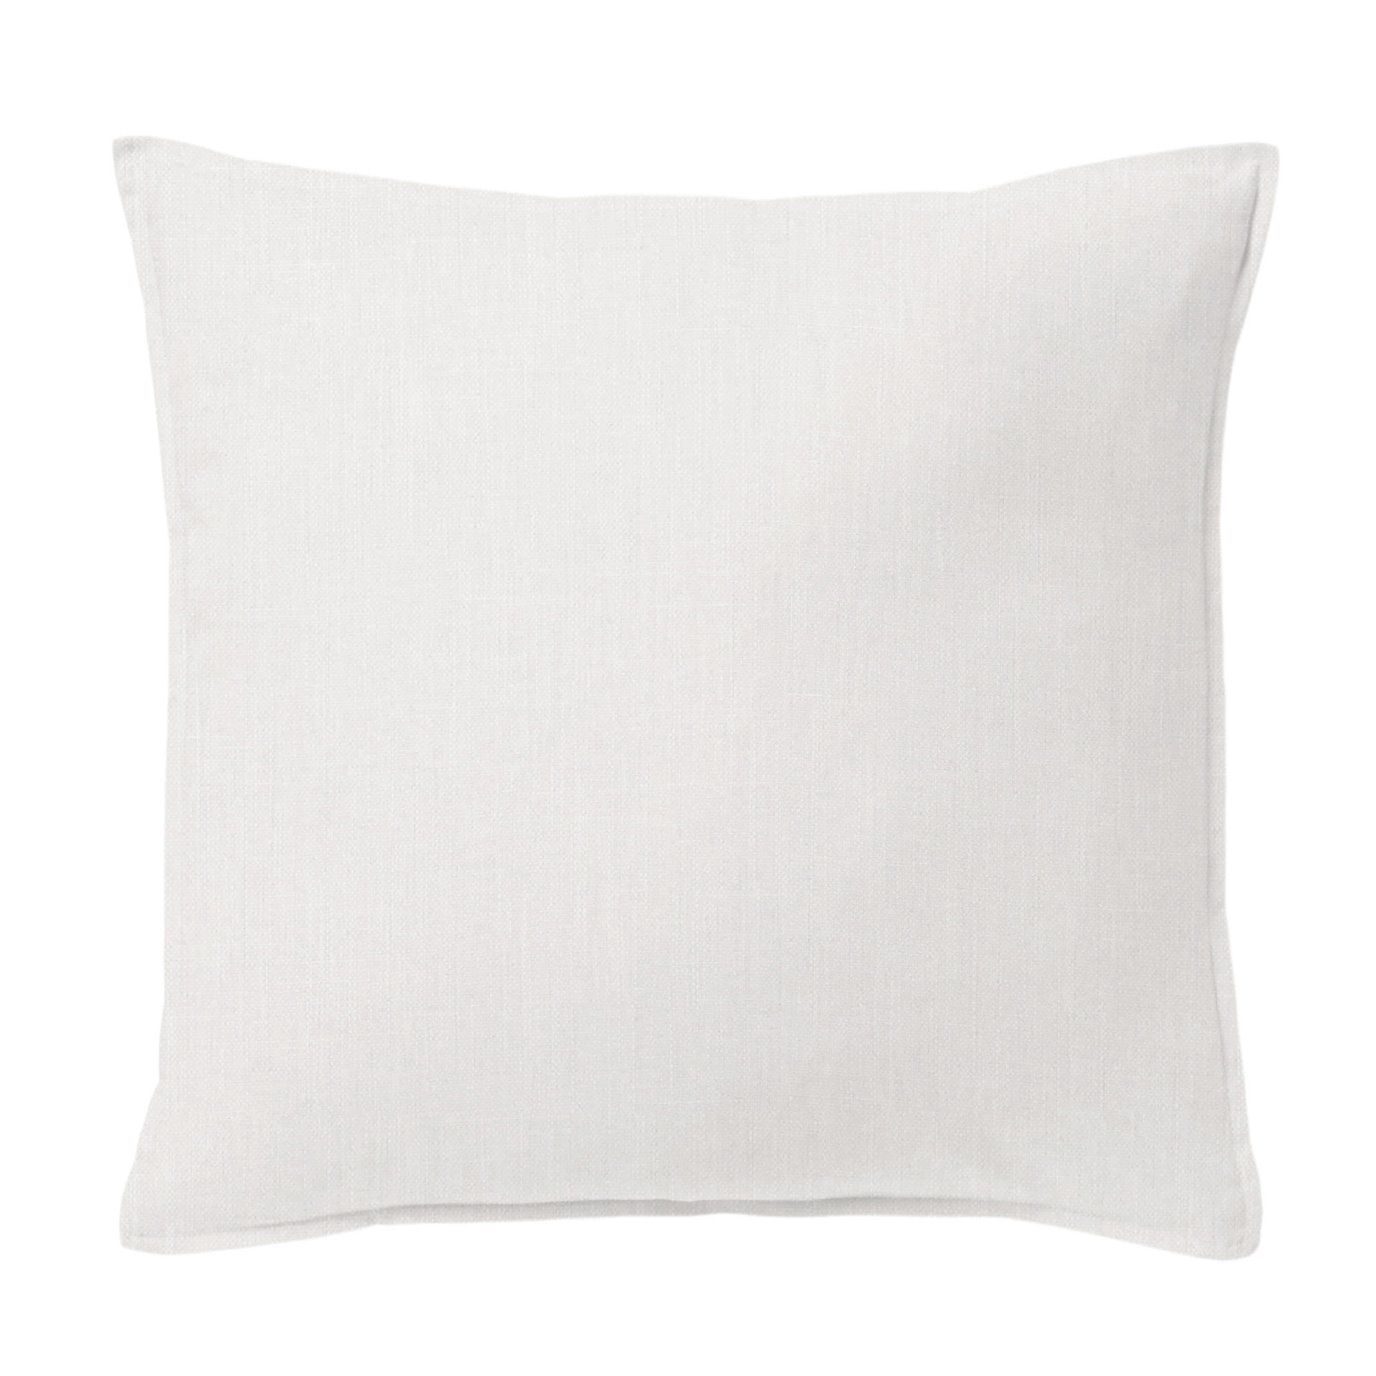 Sutton Pearl Decorative Pillow - Size 20" Square